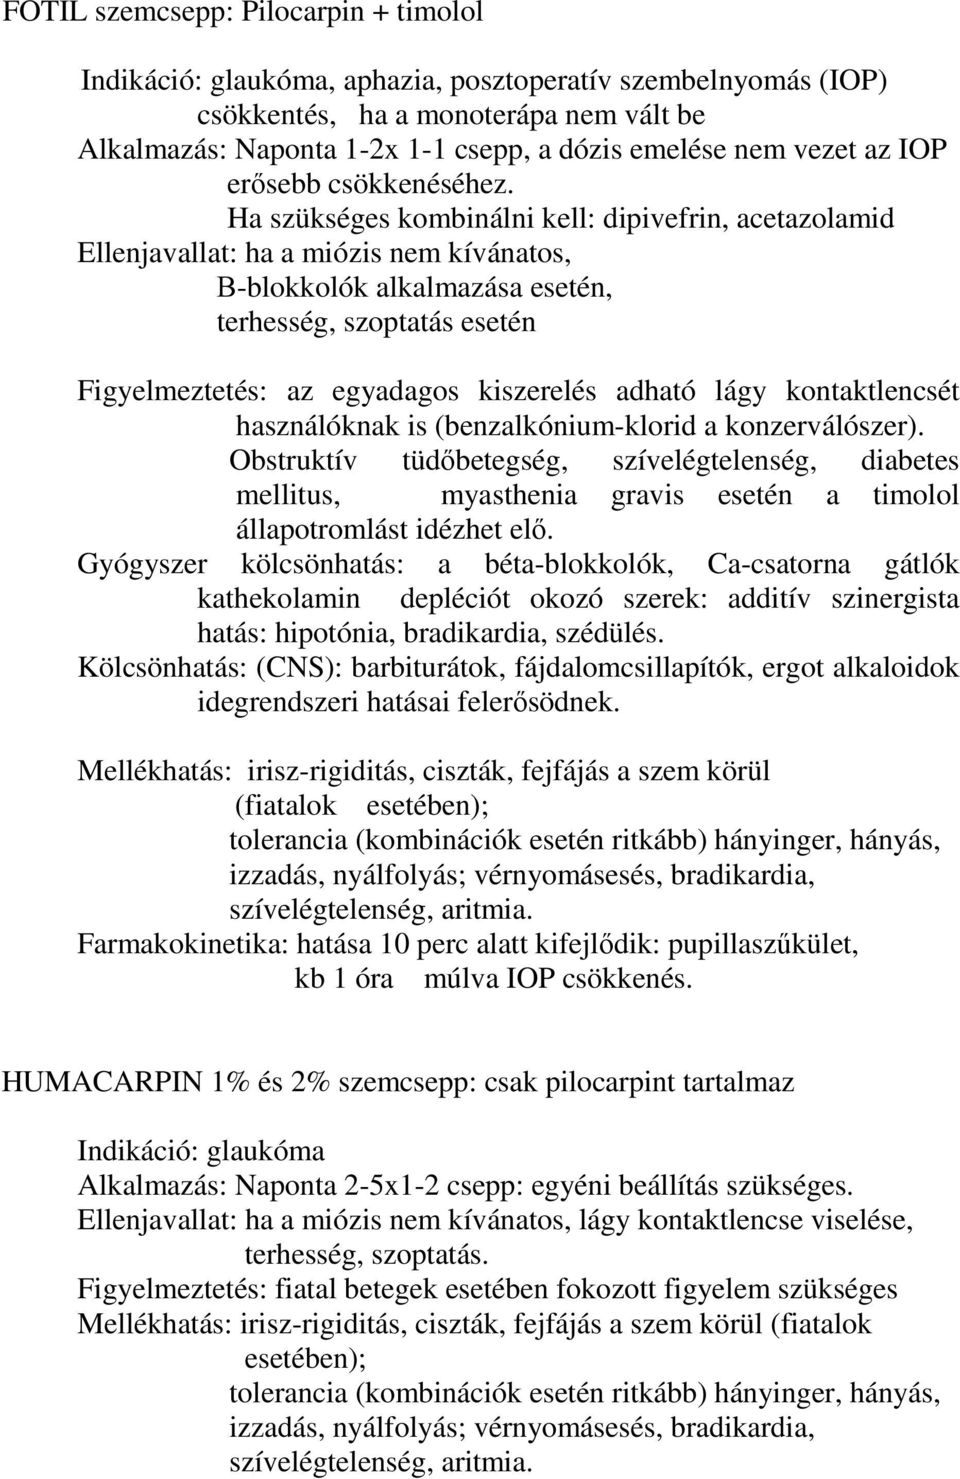 PARASYMPATHOMIMETIKUMOK - PDF Ingyenes letöltés